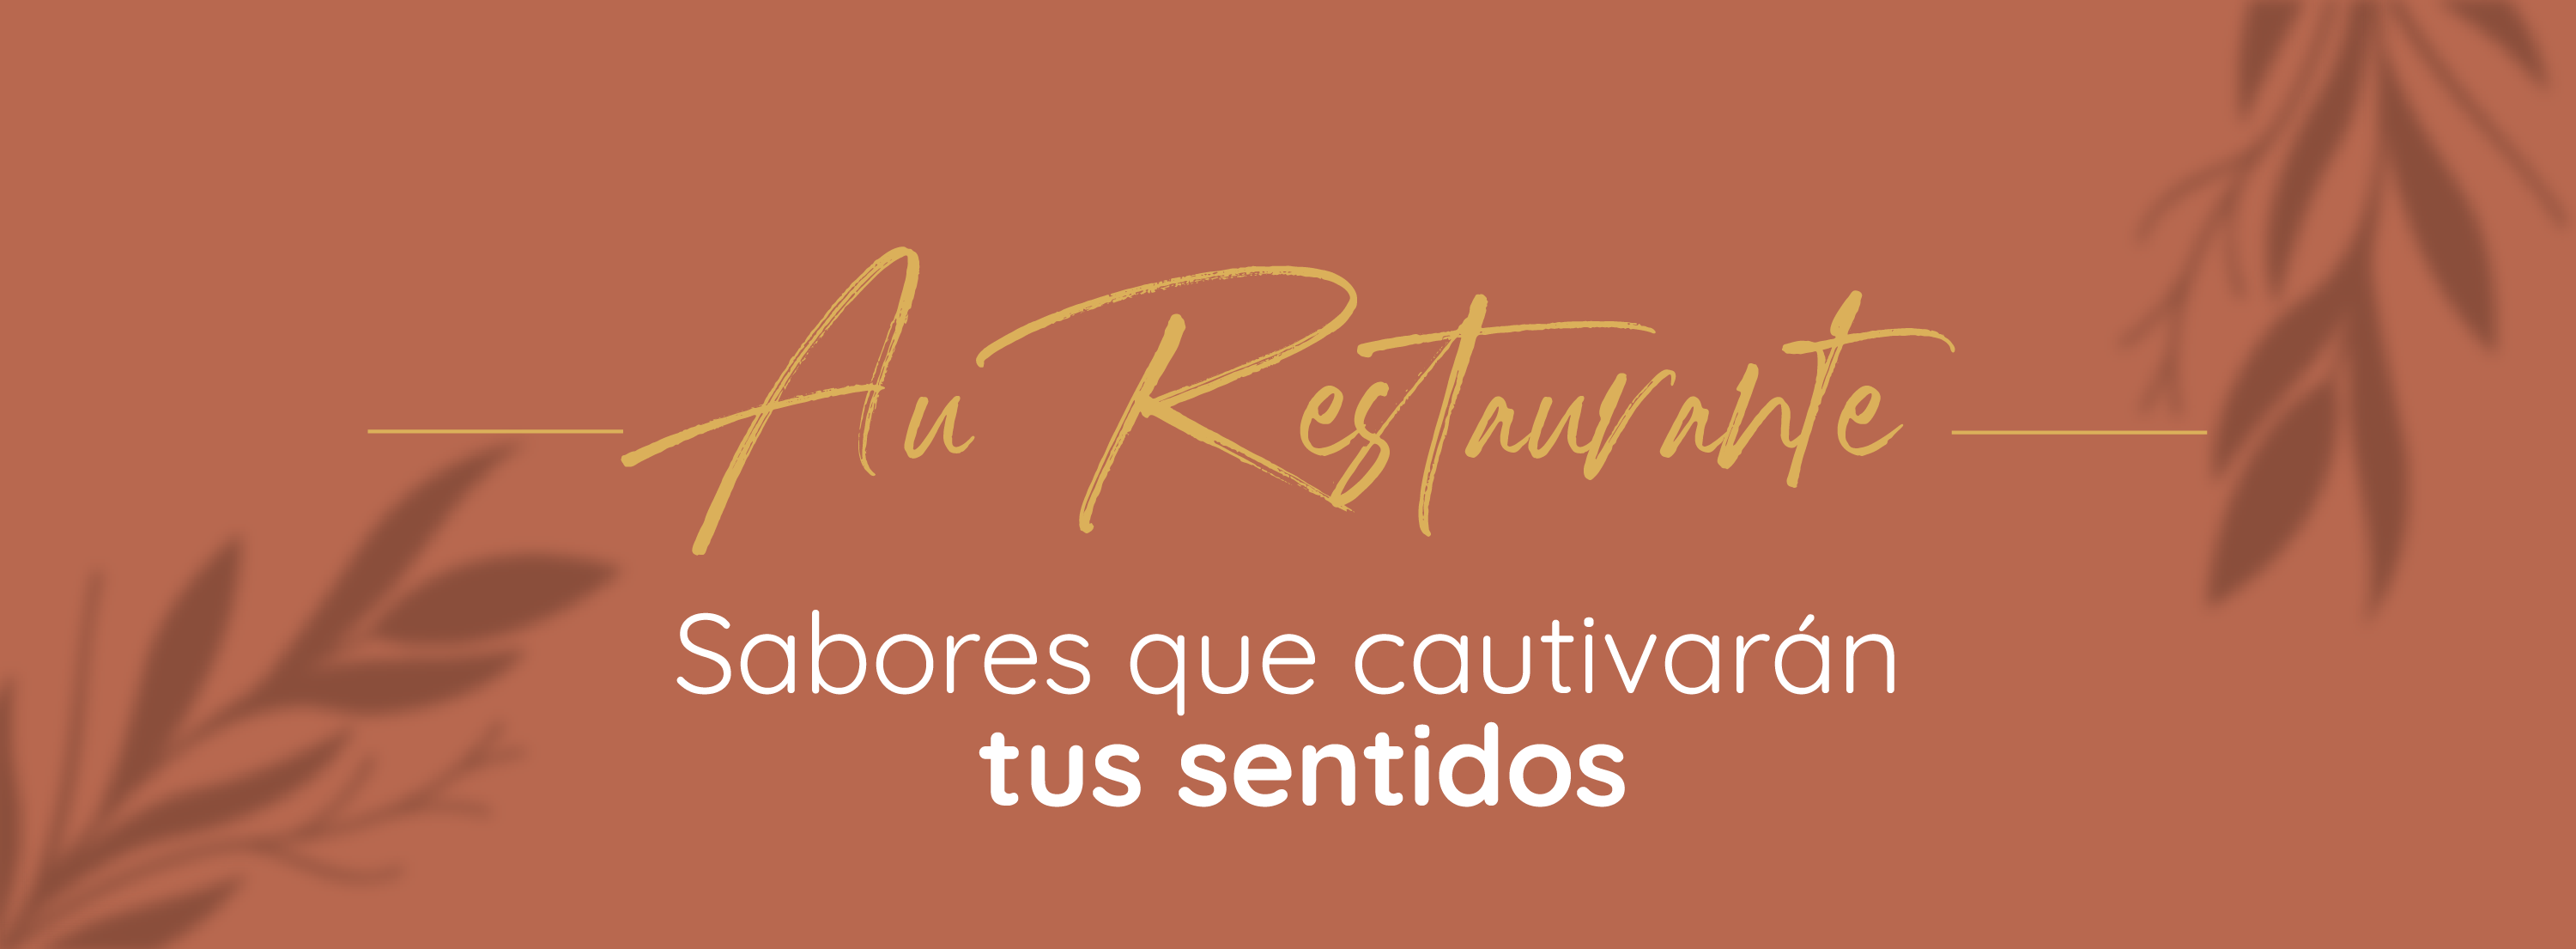 Restaurant Hotel Aurelio